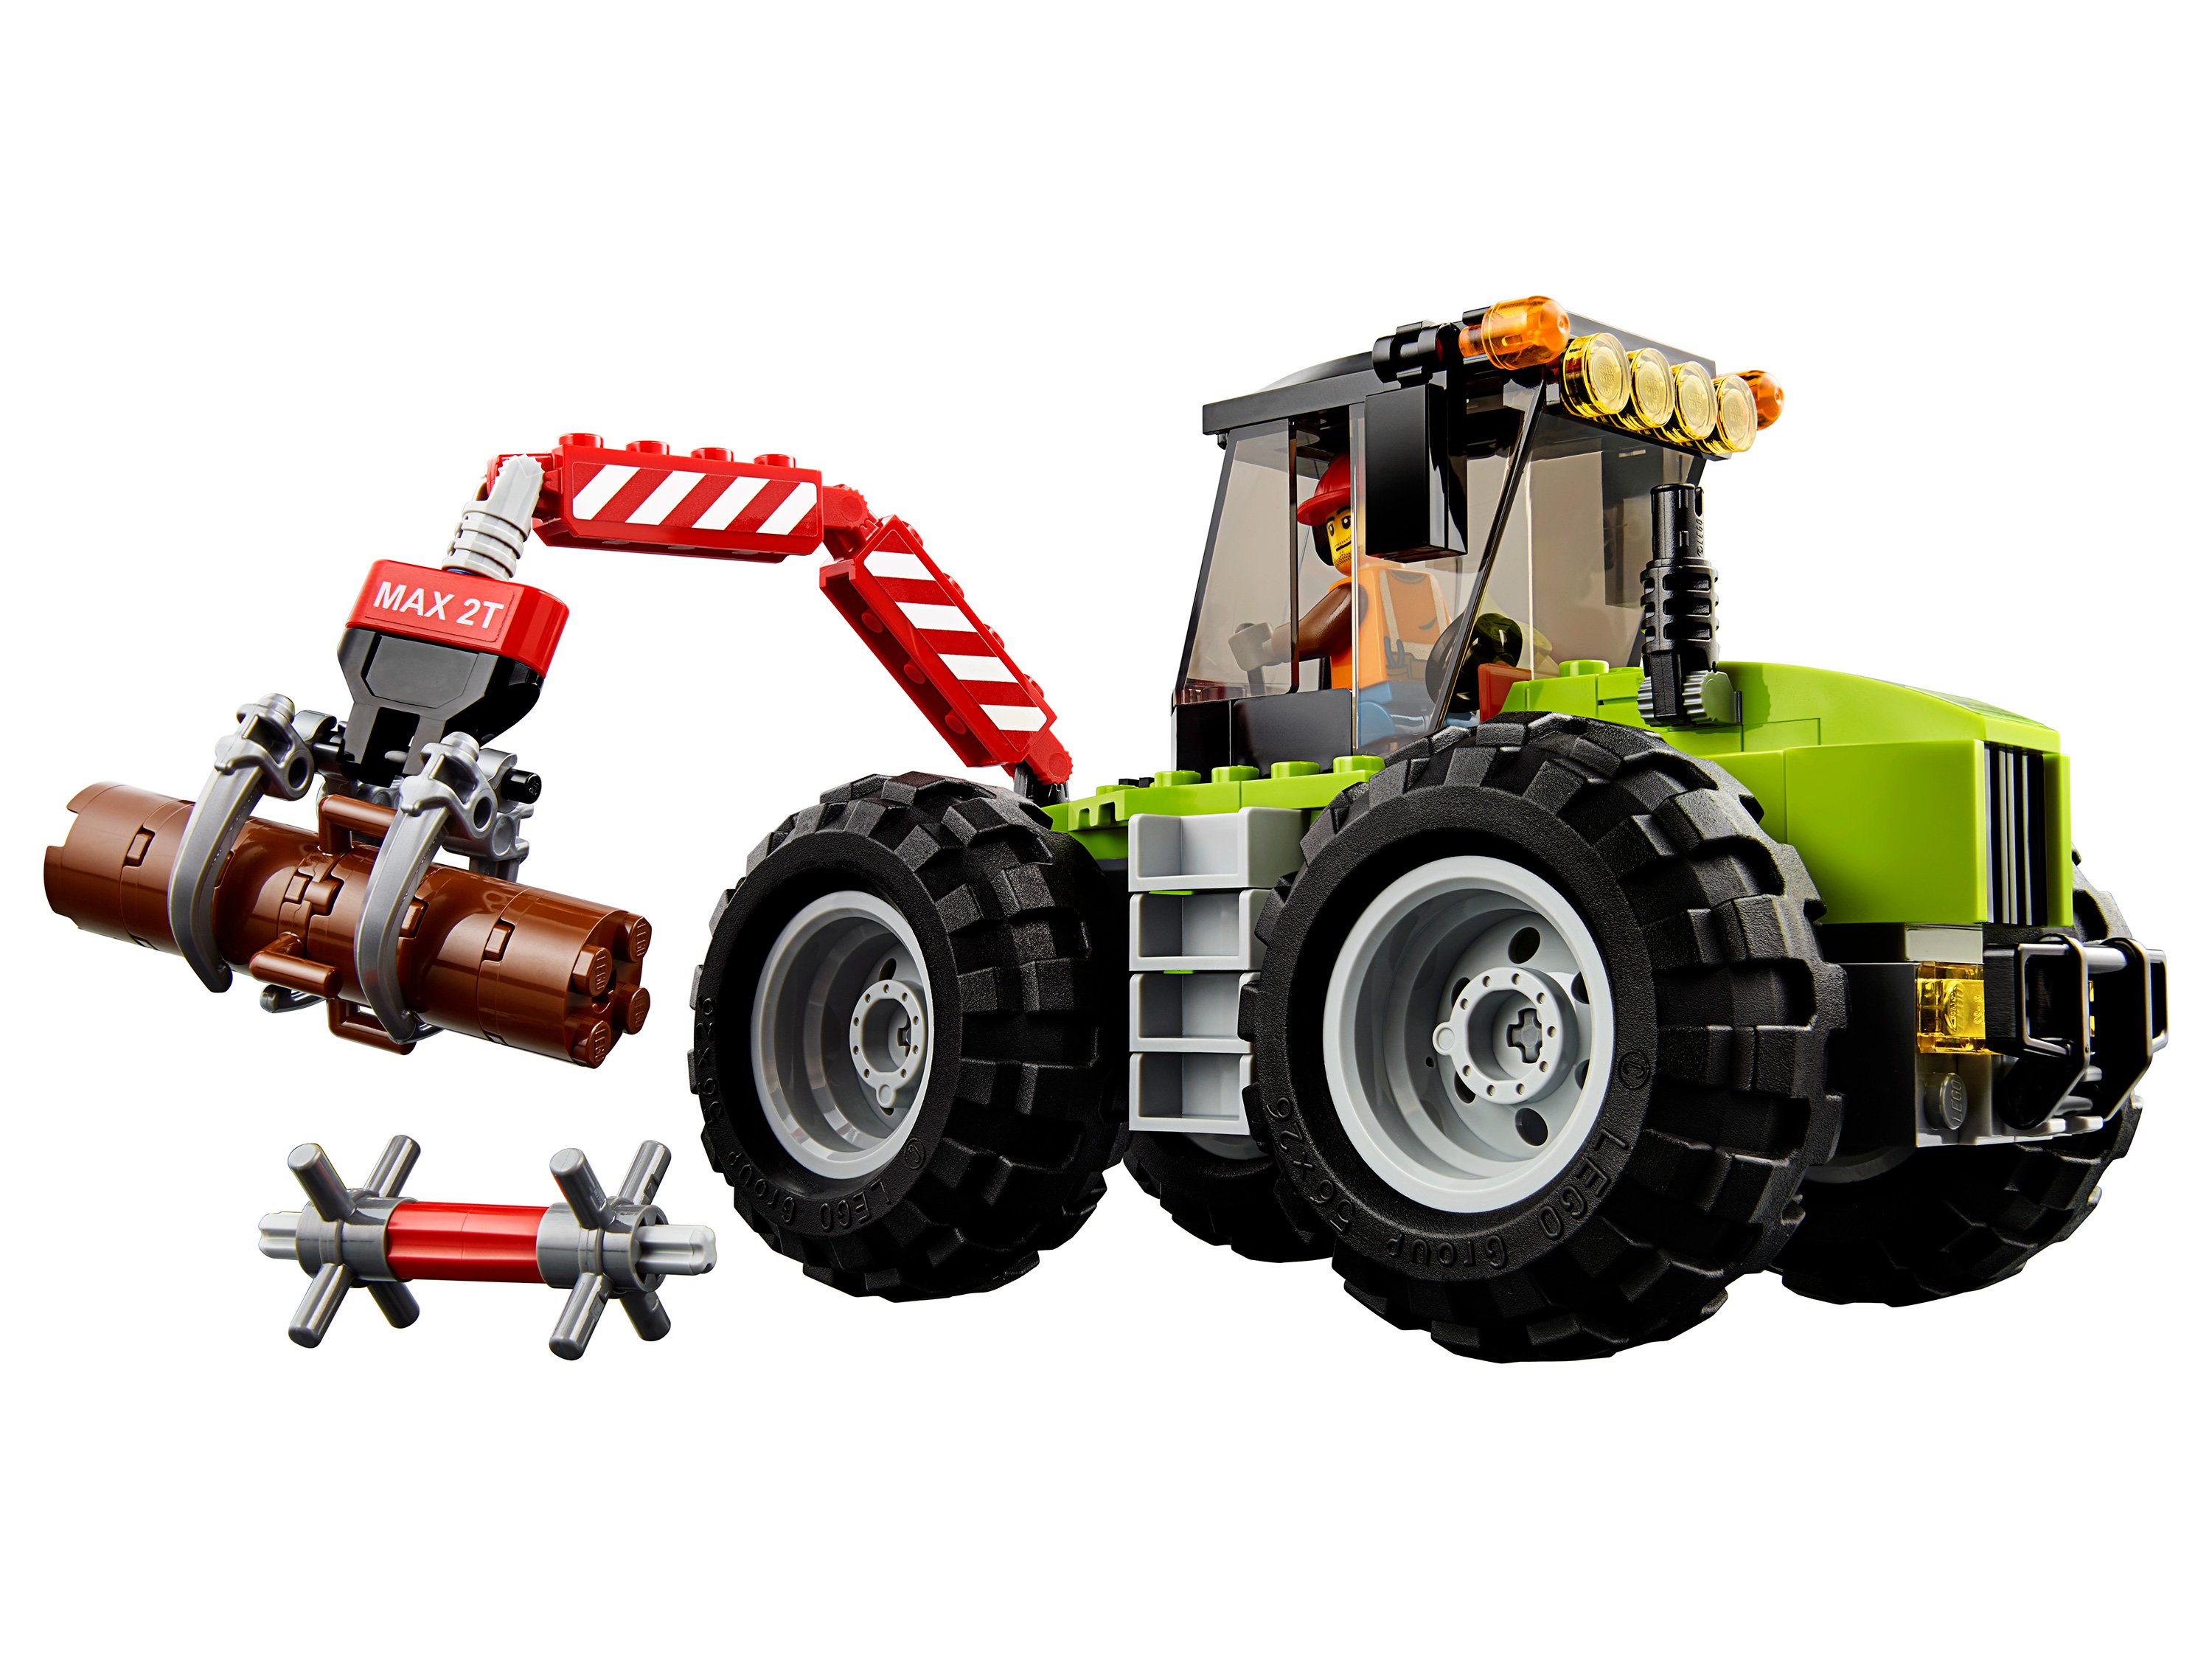 Конструктор LEGO 60181 City Great Vehicles Лесной трактор